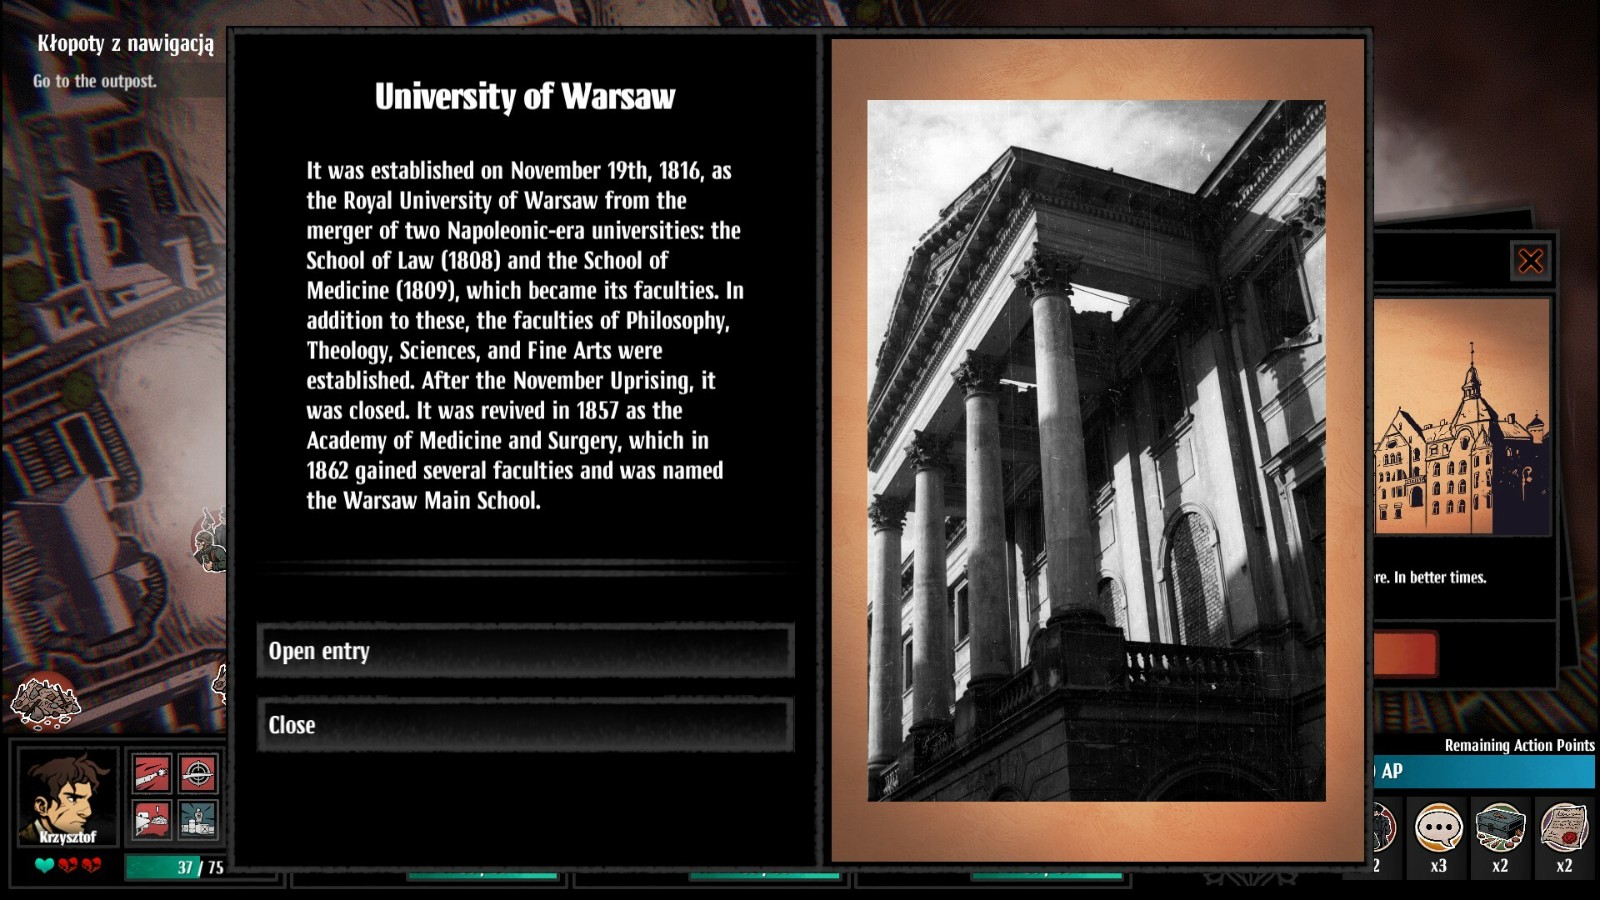 策略遊戲《華沙》steam免費發布 二戰背景回合製經典